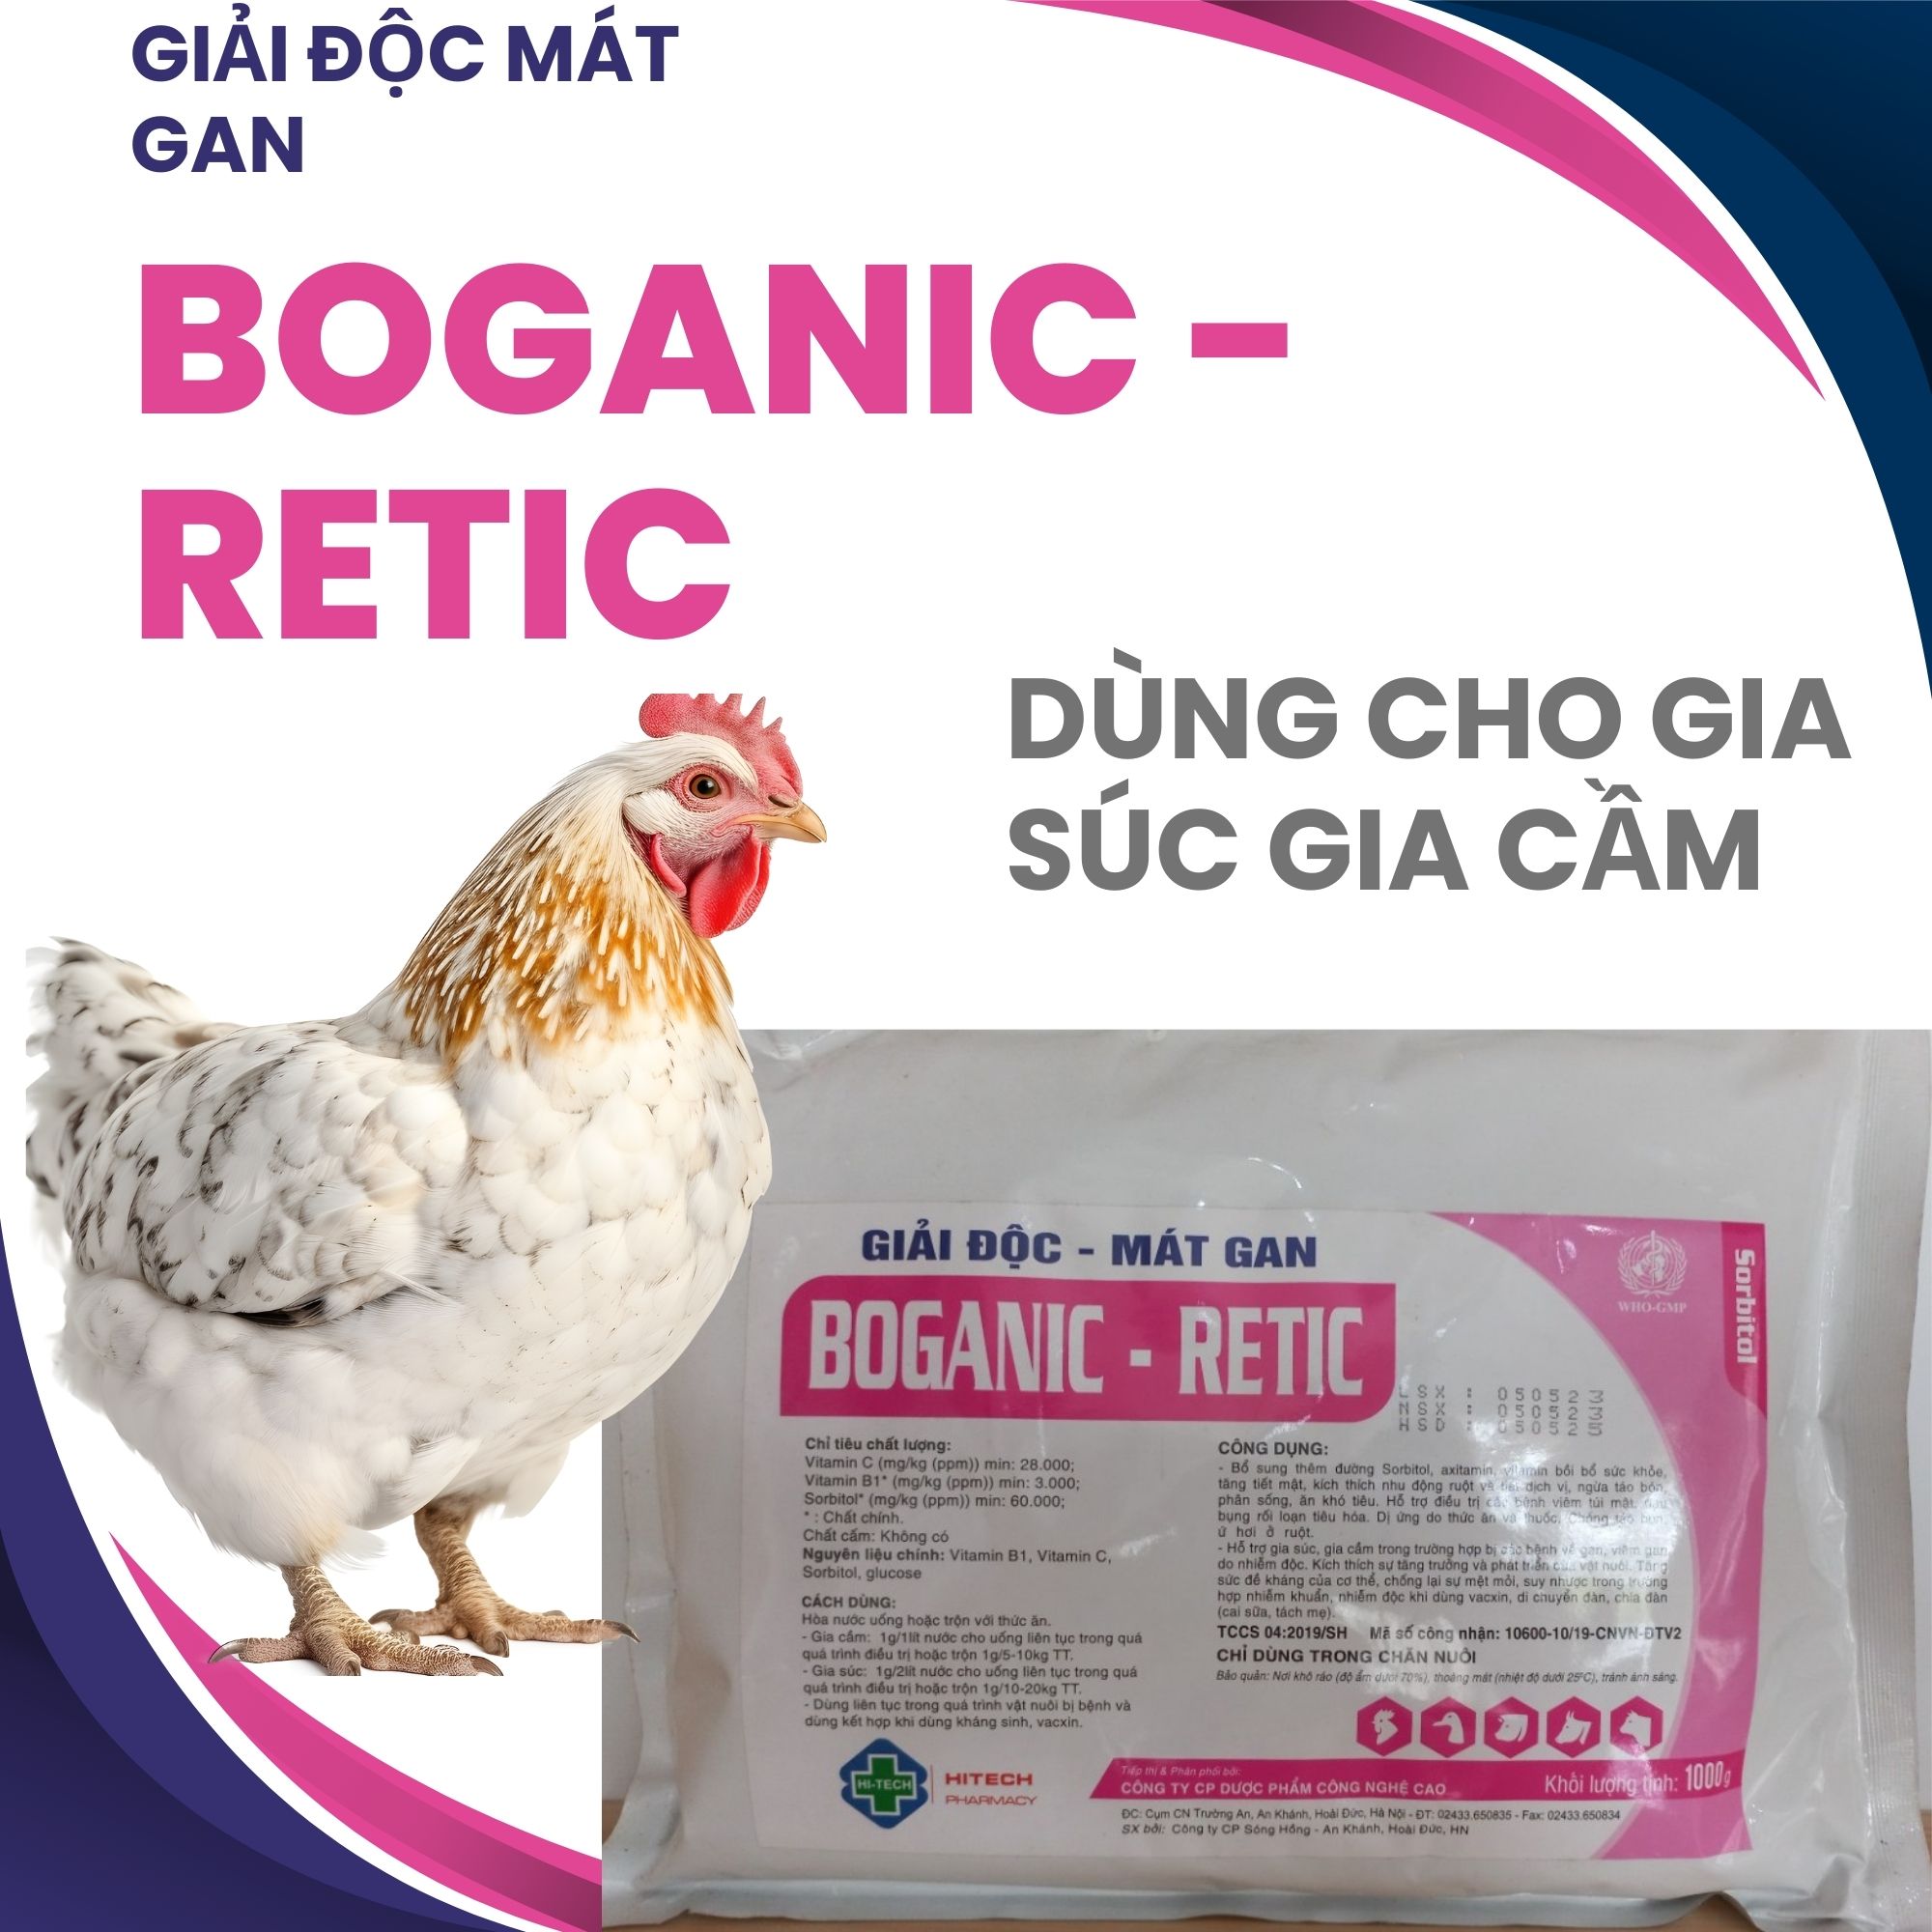 Boganic - Retic giải độc mát gan  dành cho gà vịt heo bò giải độc cấp gan thận